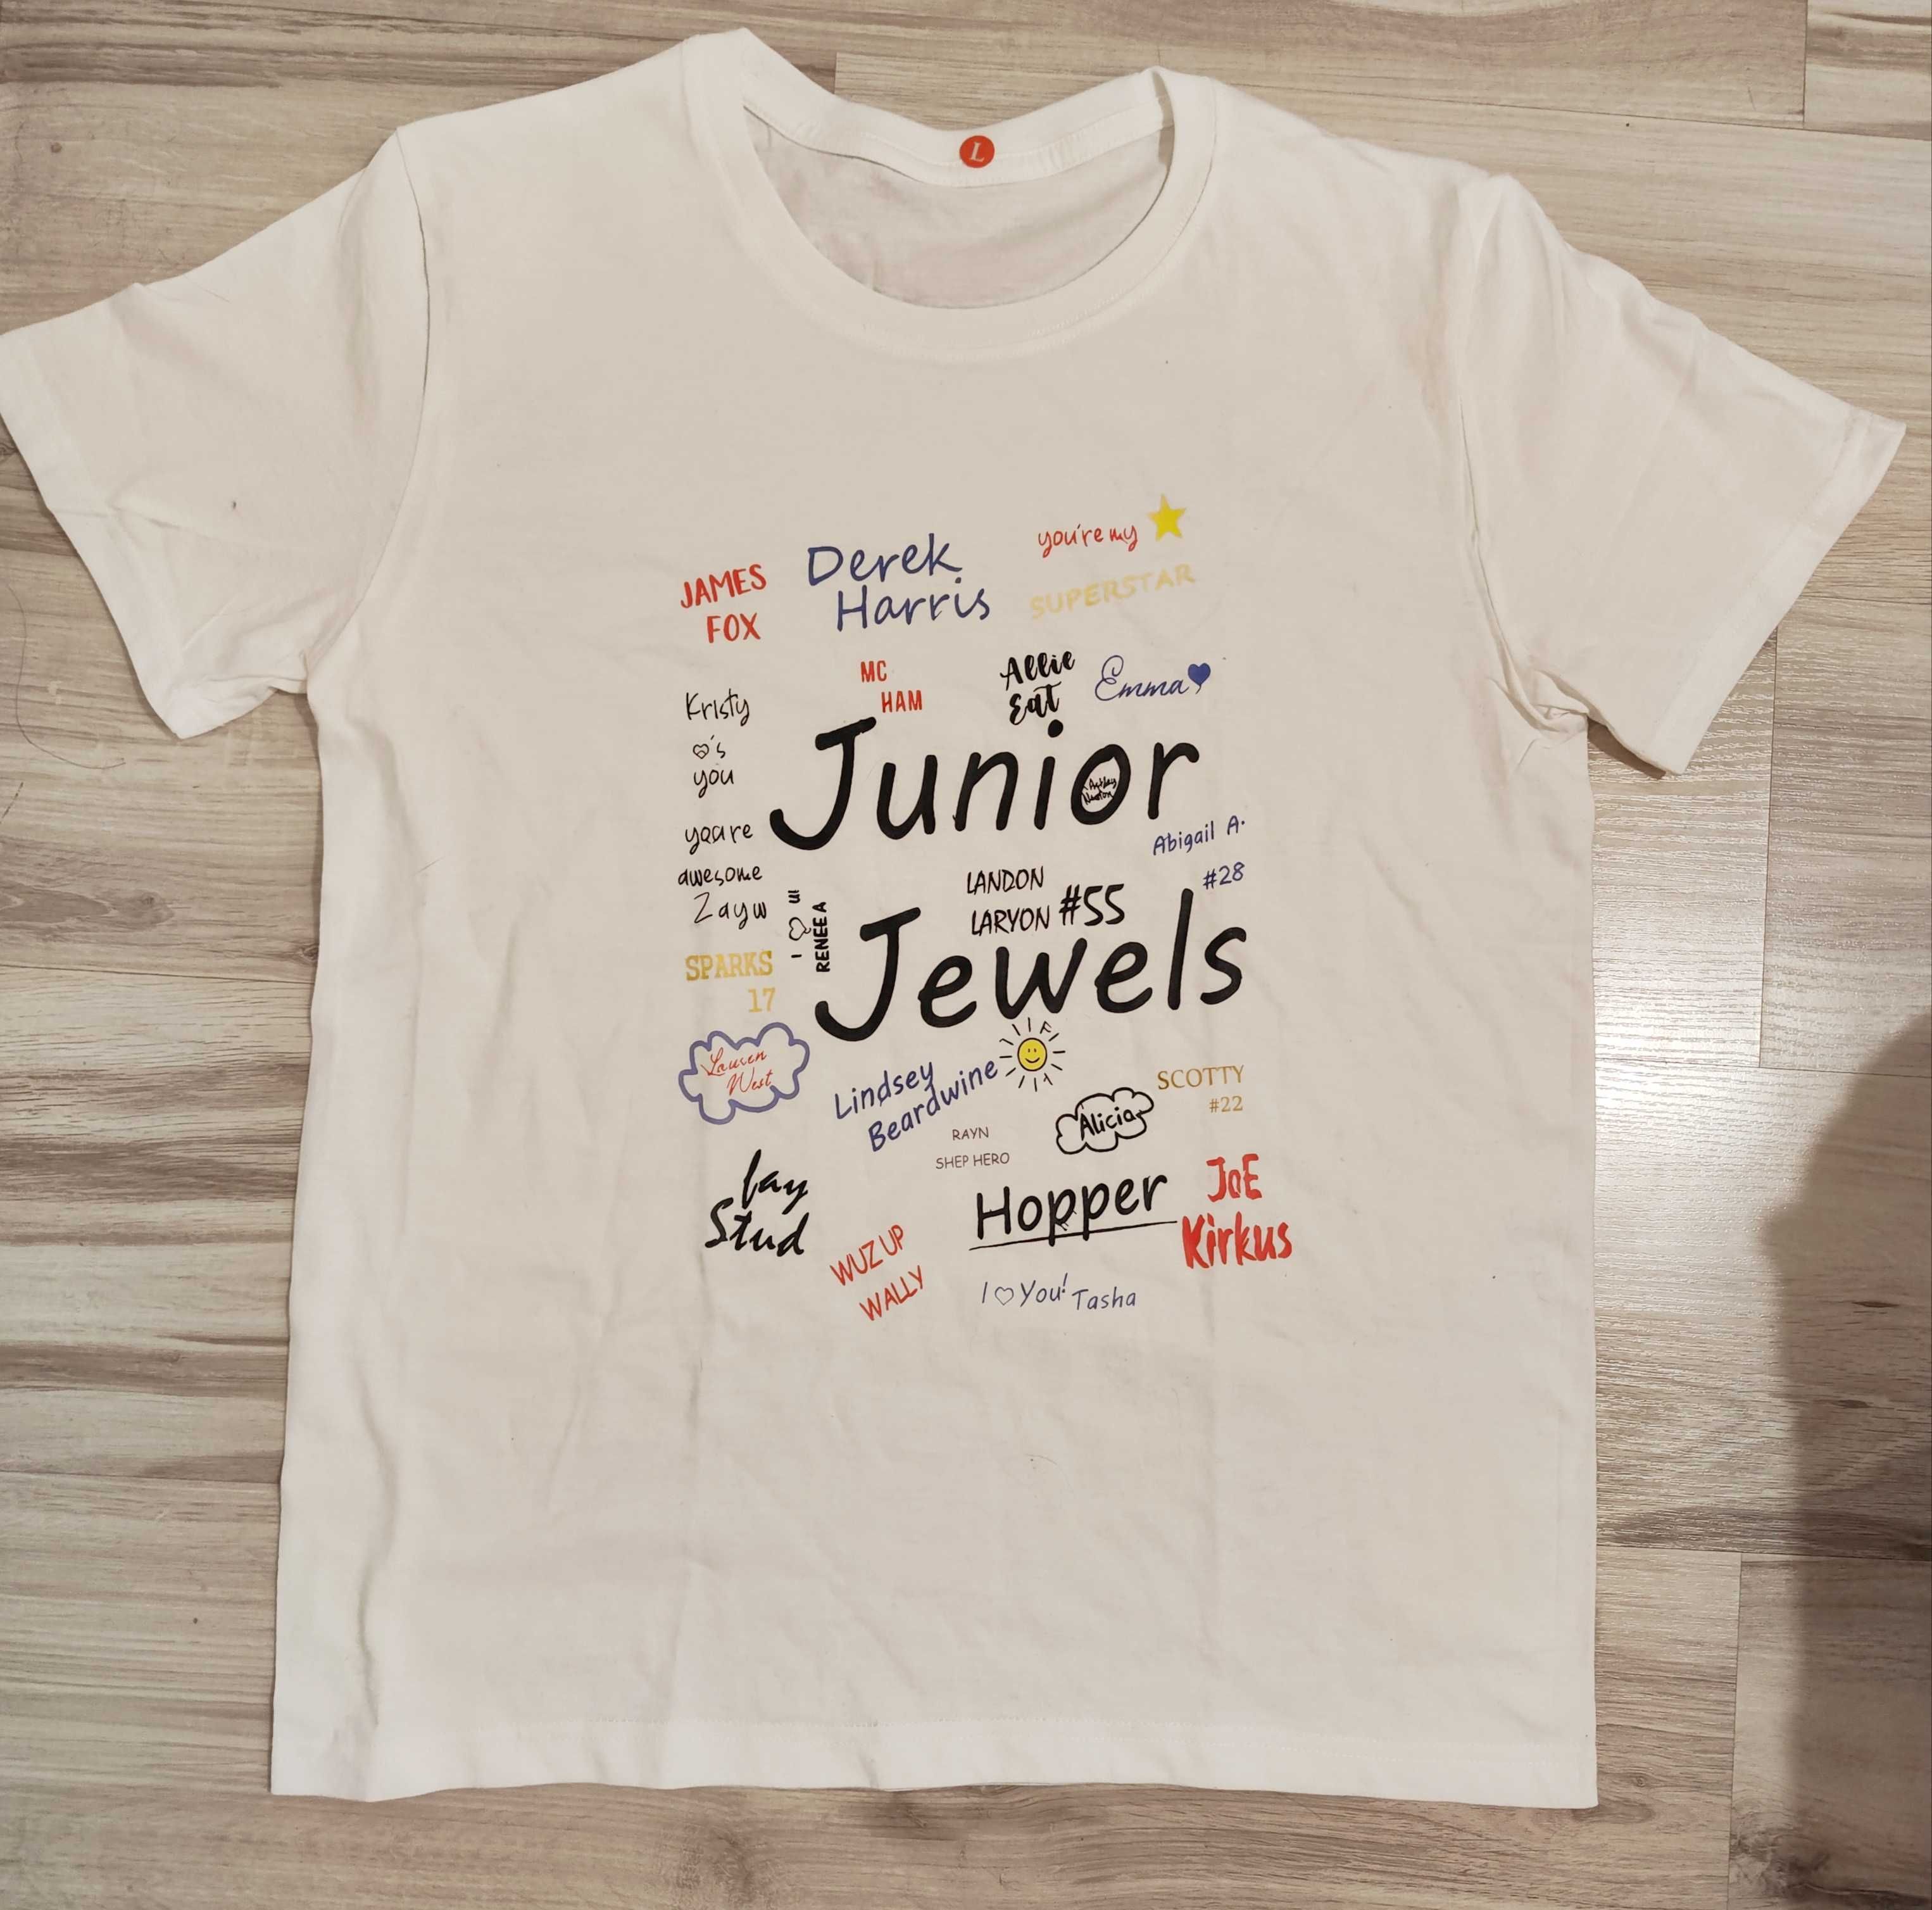 Koszulka bawełniana Taylor swift Fearless junior jewels